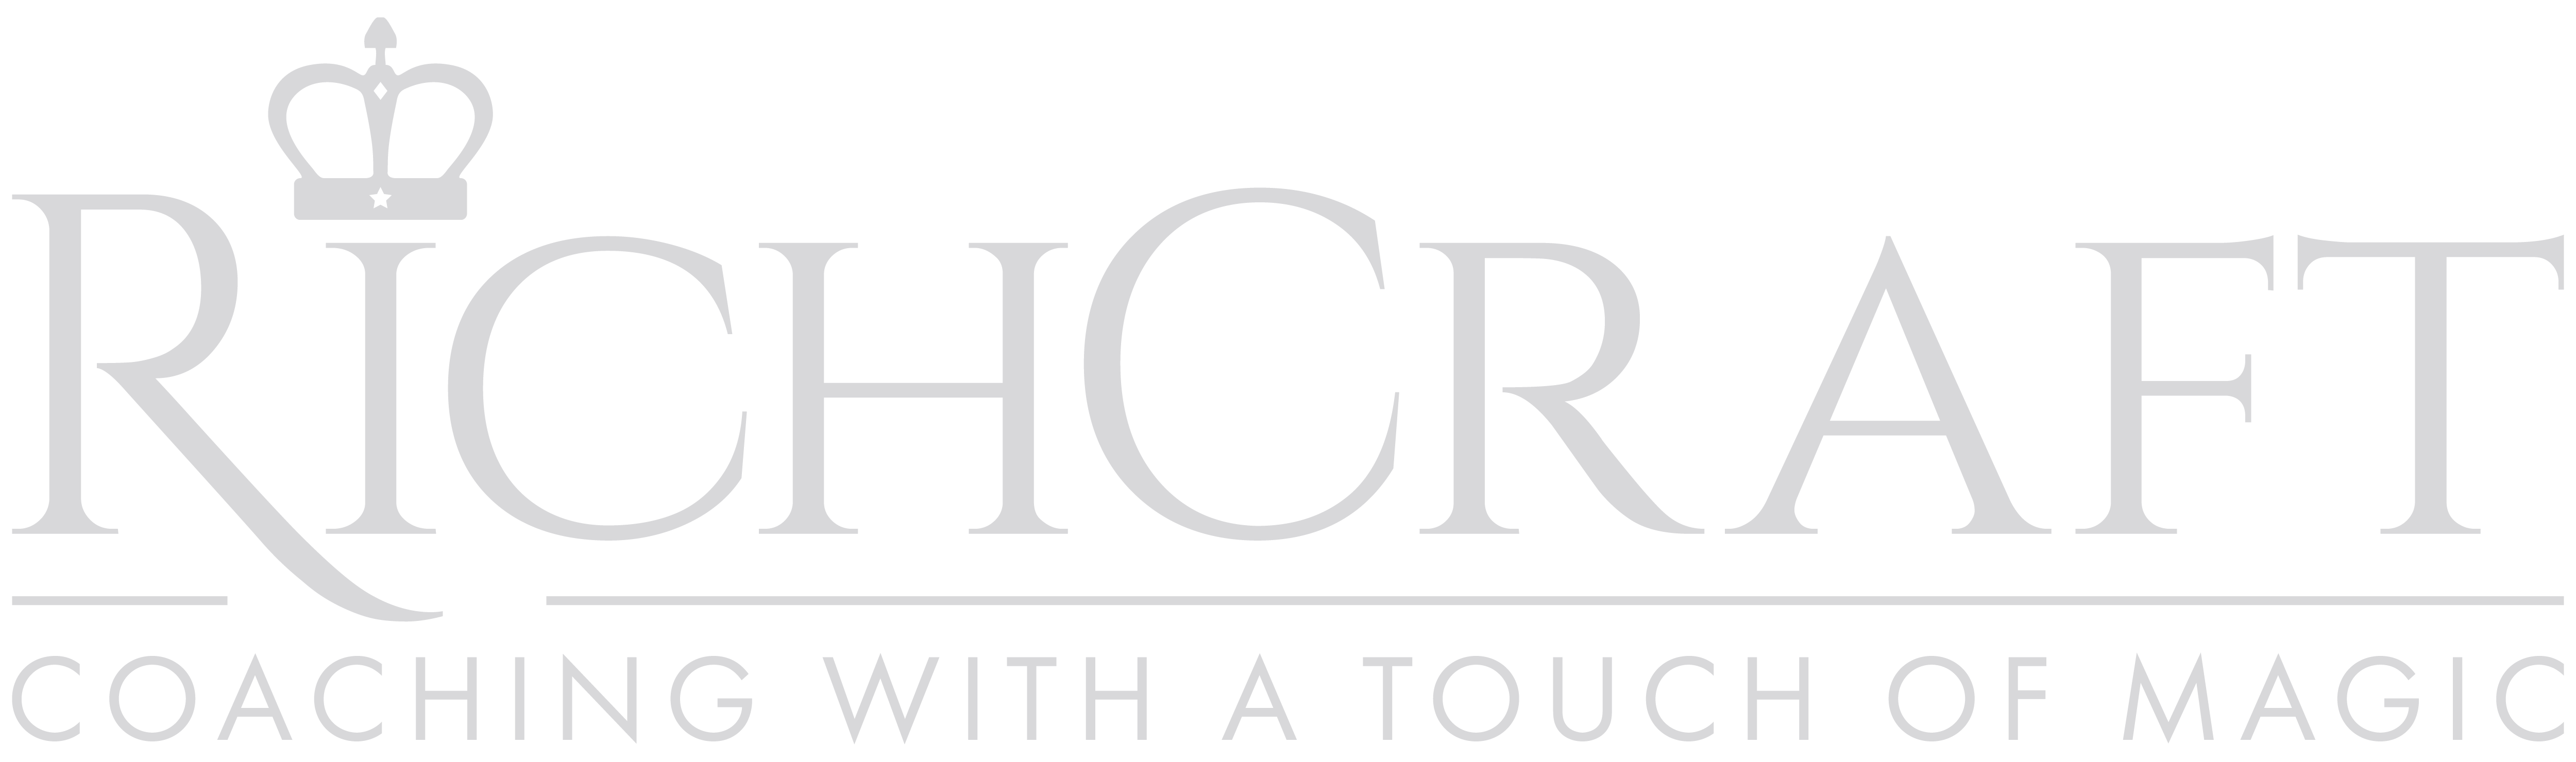 RichCraft logo grey